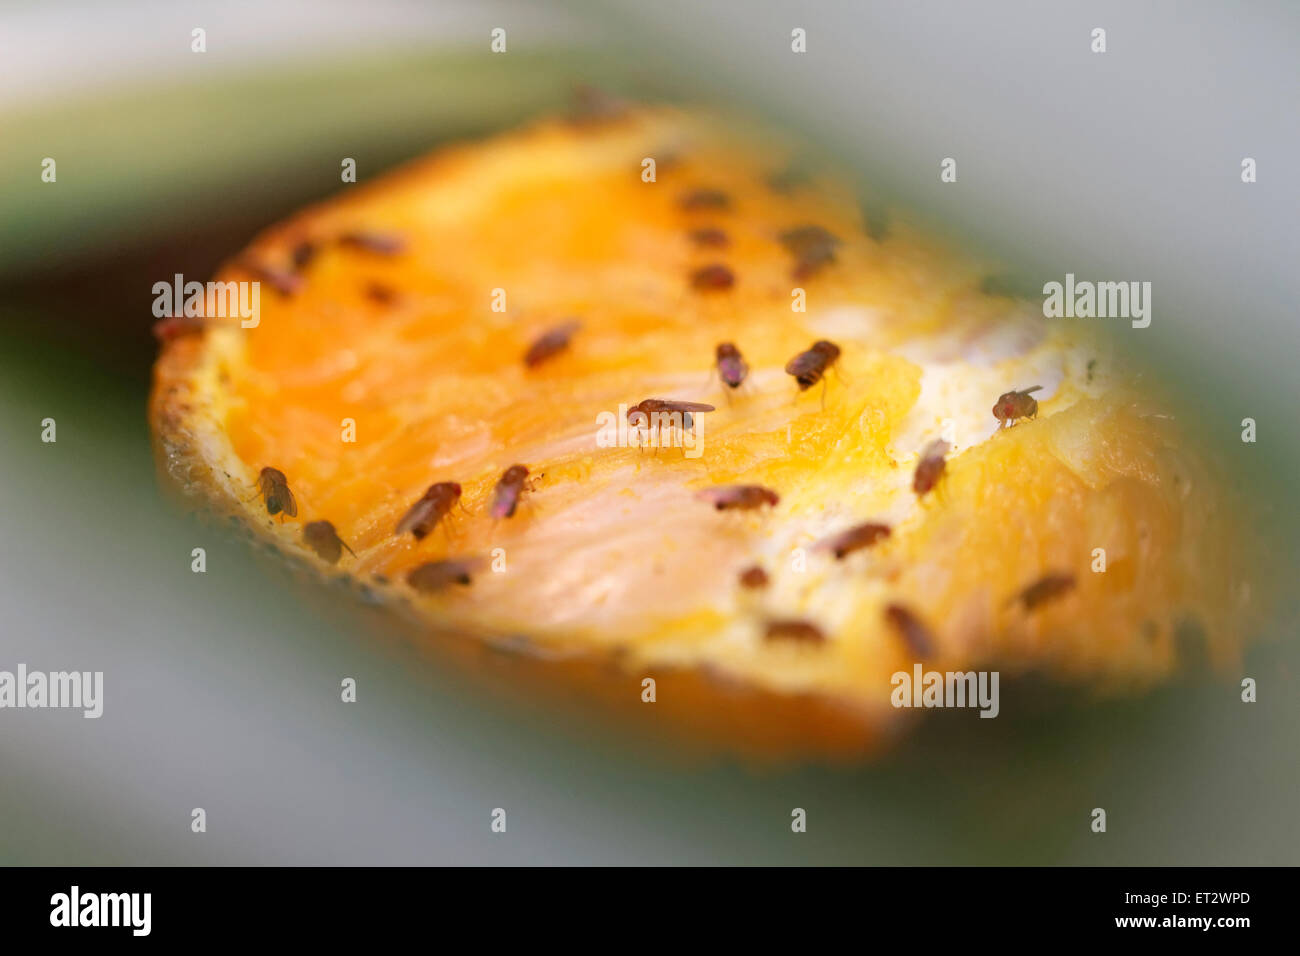 Fruit flies on a segment of orange Stock Photo